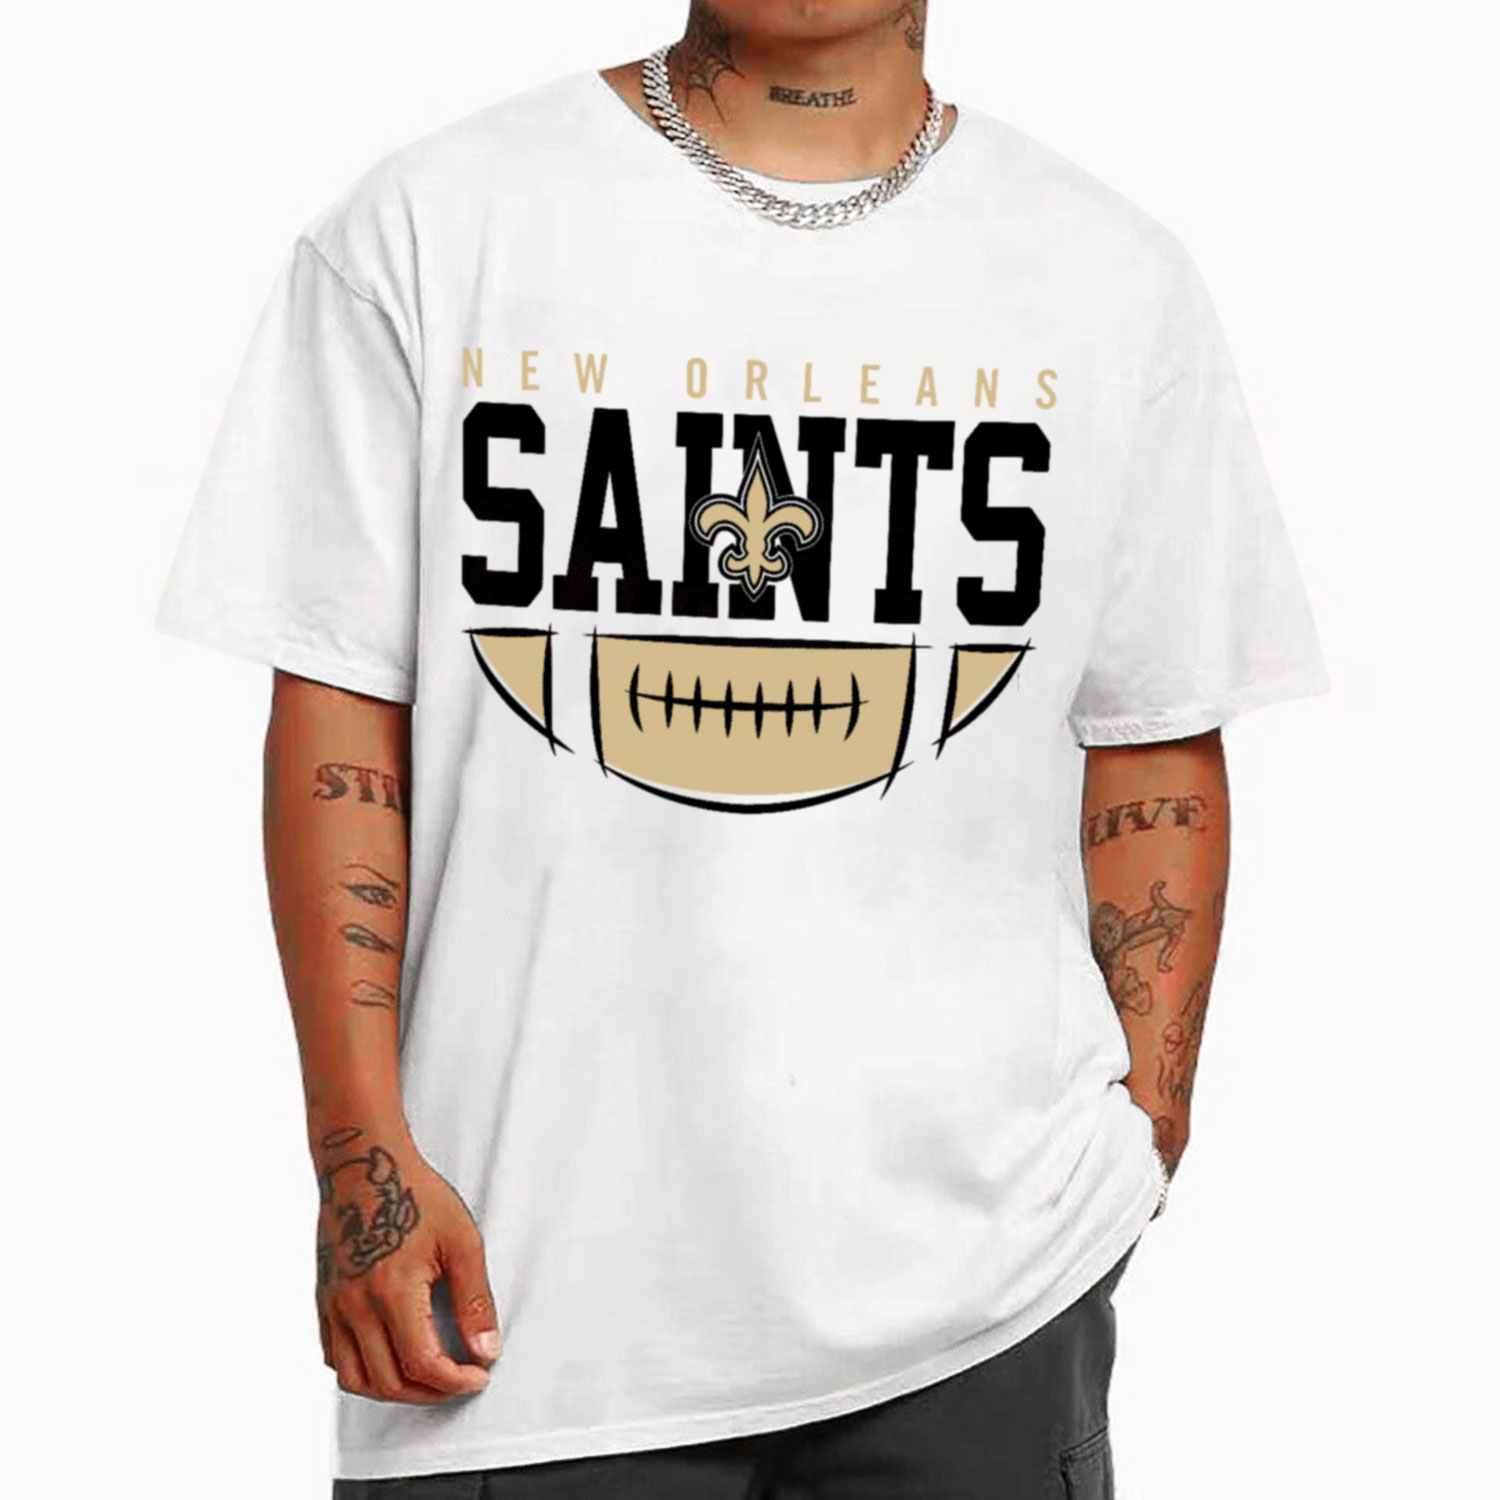 men saints t shirt